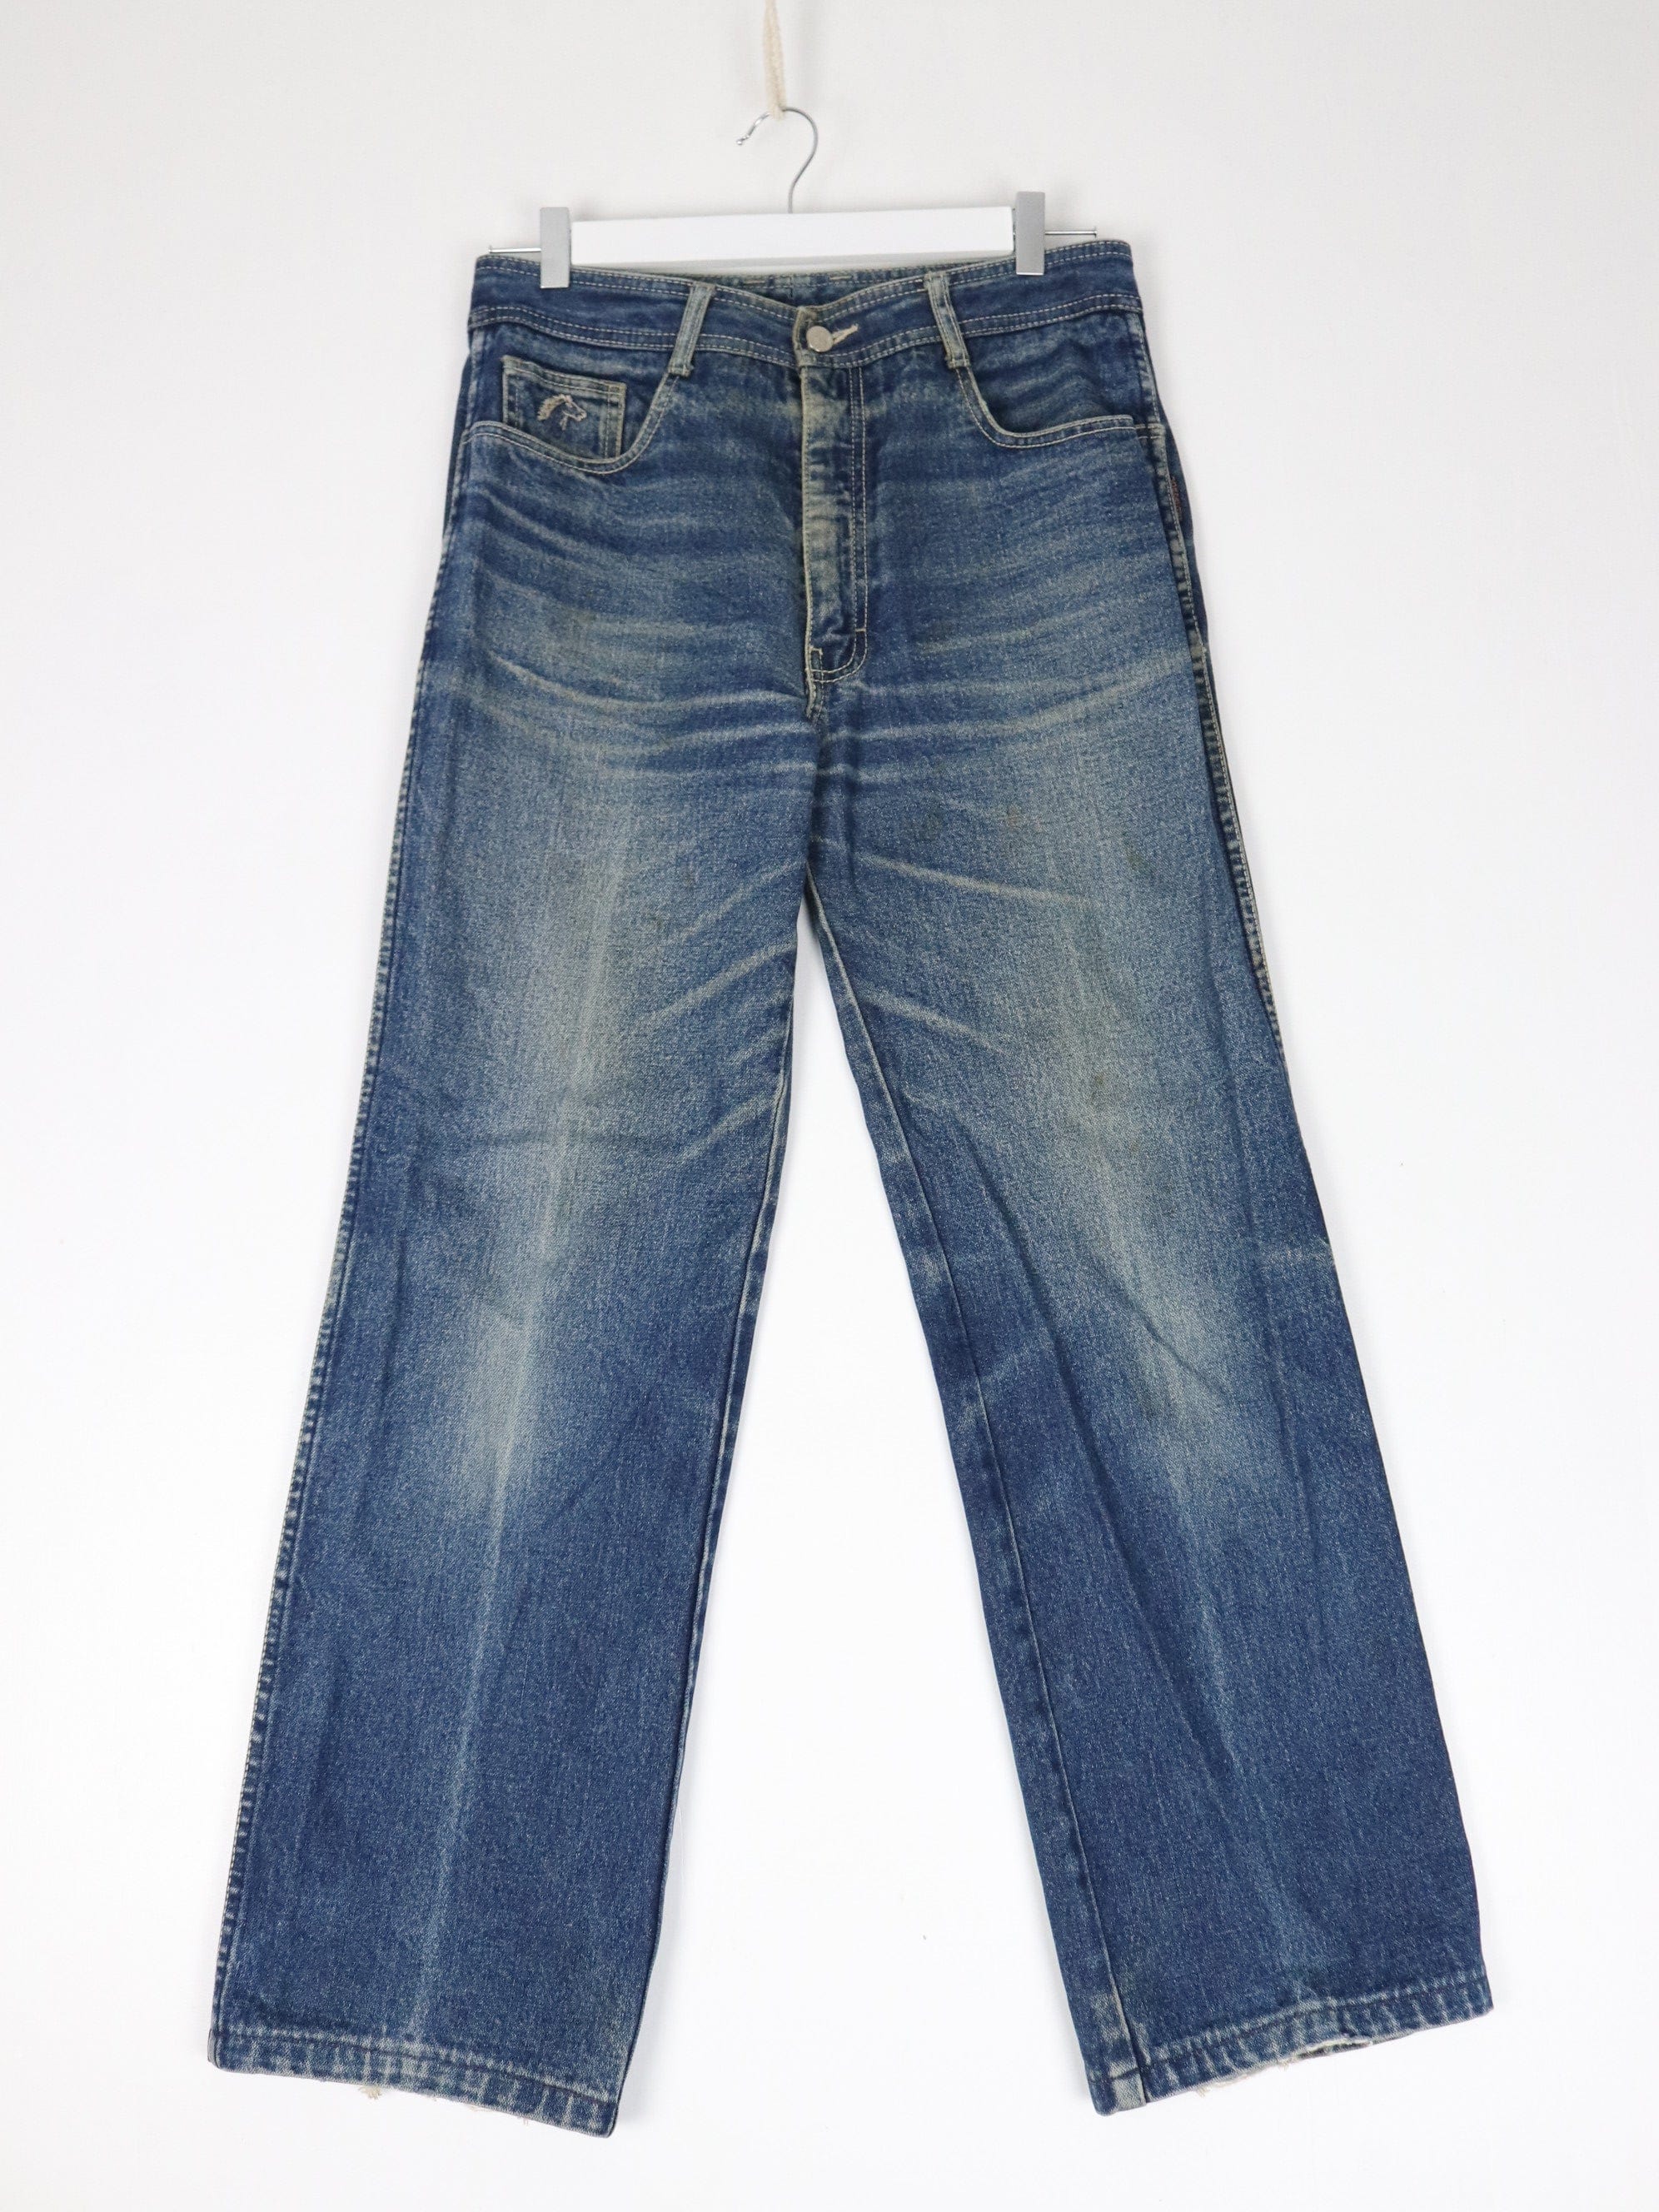 Vintage Jordache Pants Fits Mens 31 x 29 Blue Denim Jeans Y2K – Proper  Vintage